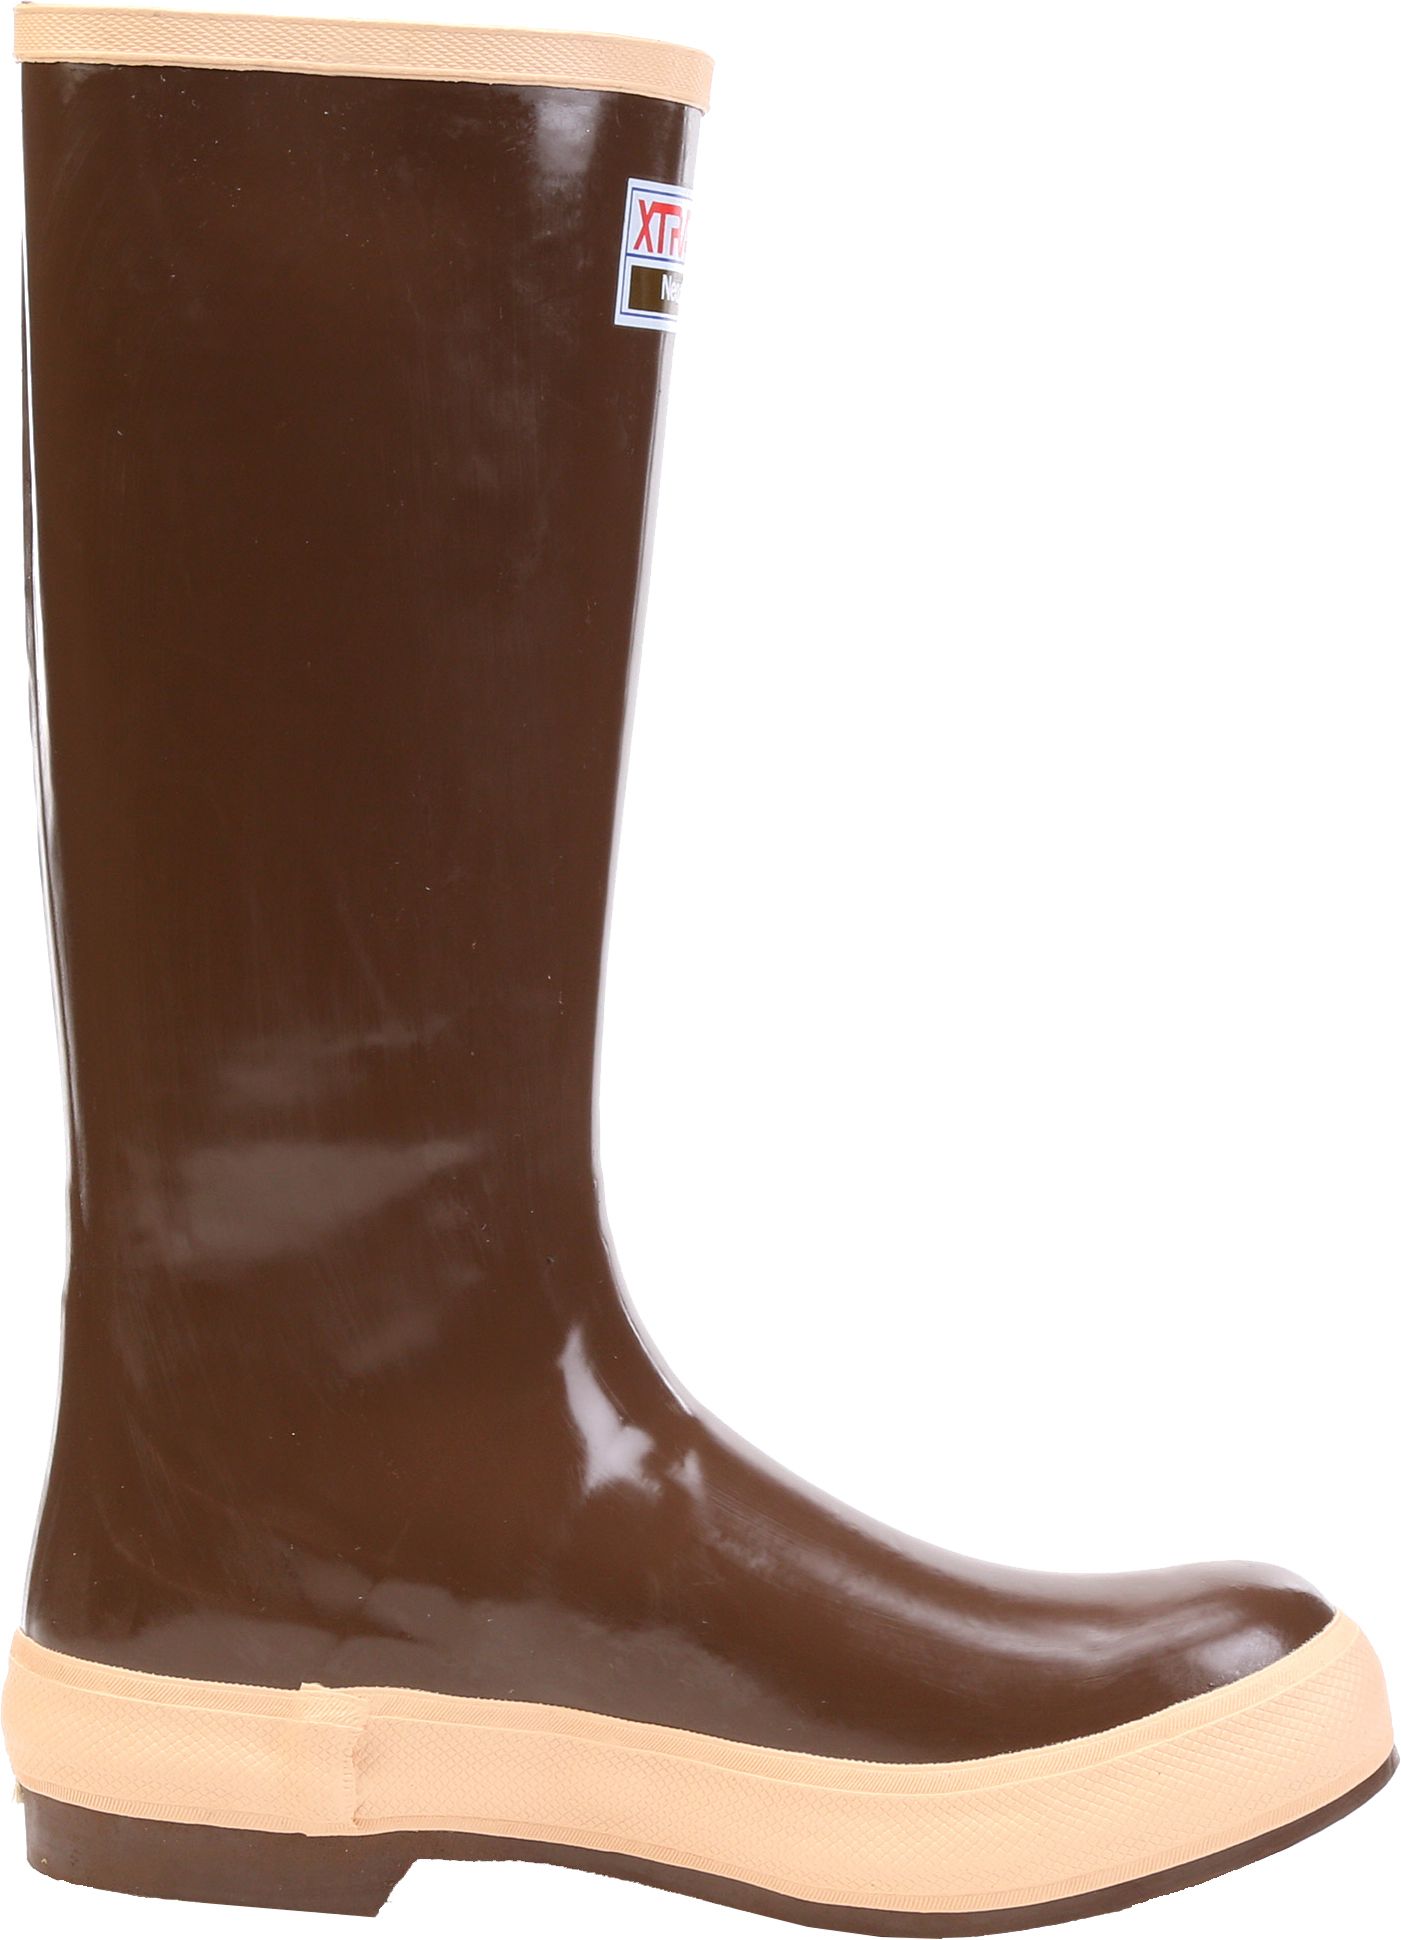 xtratuf steel toe rubber boots